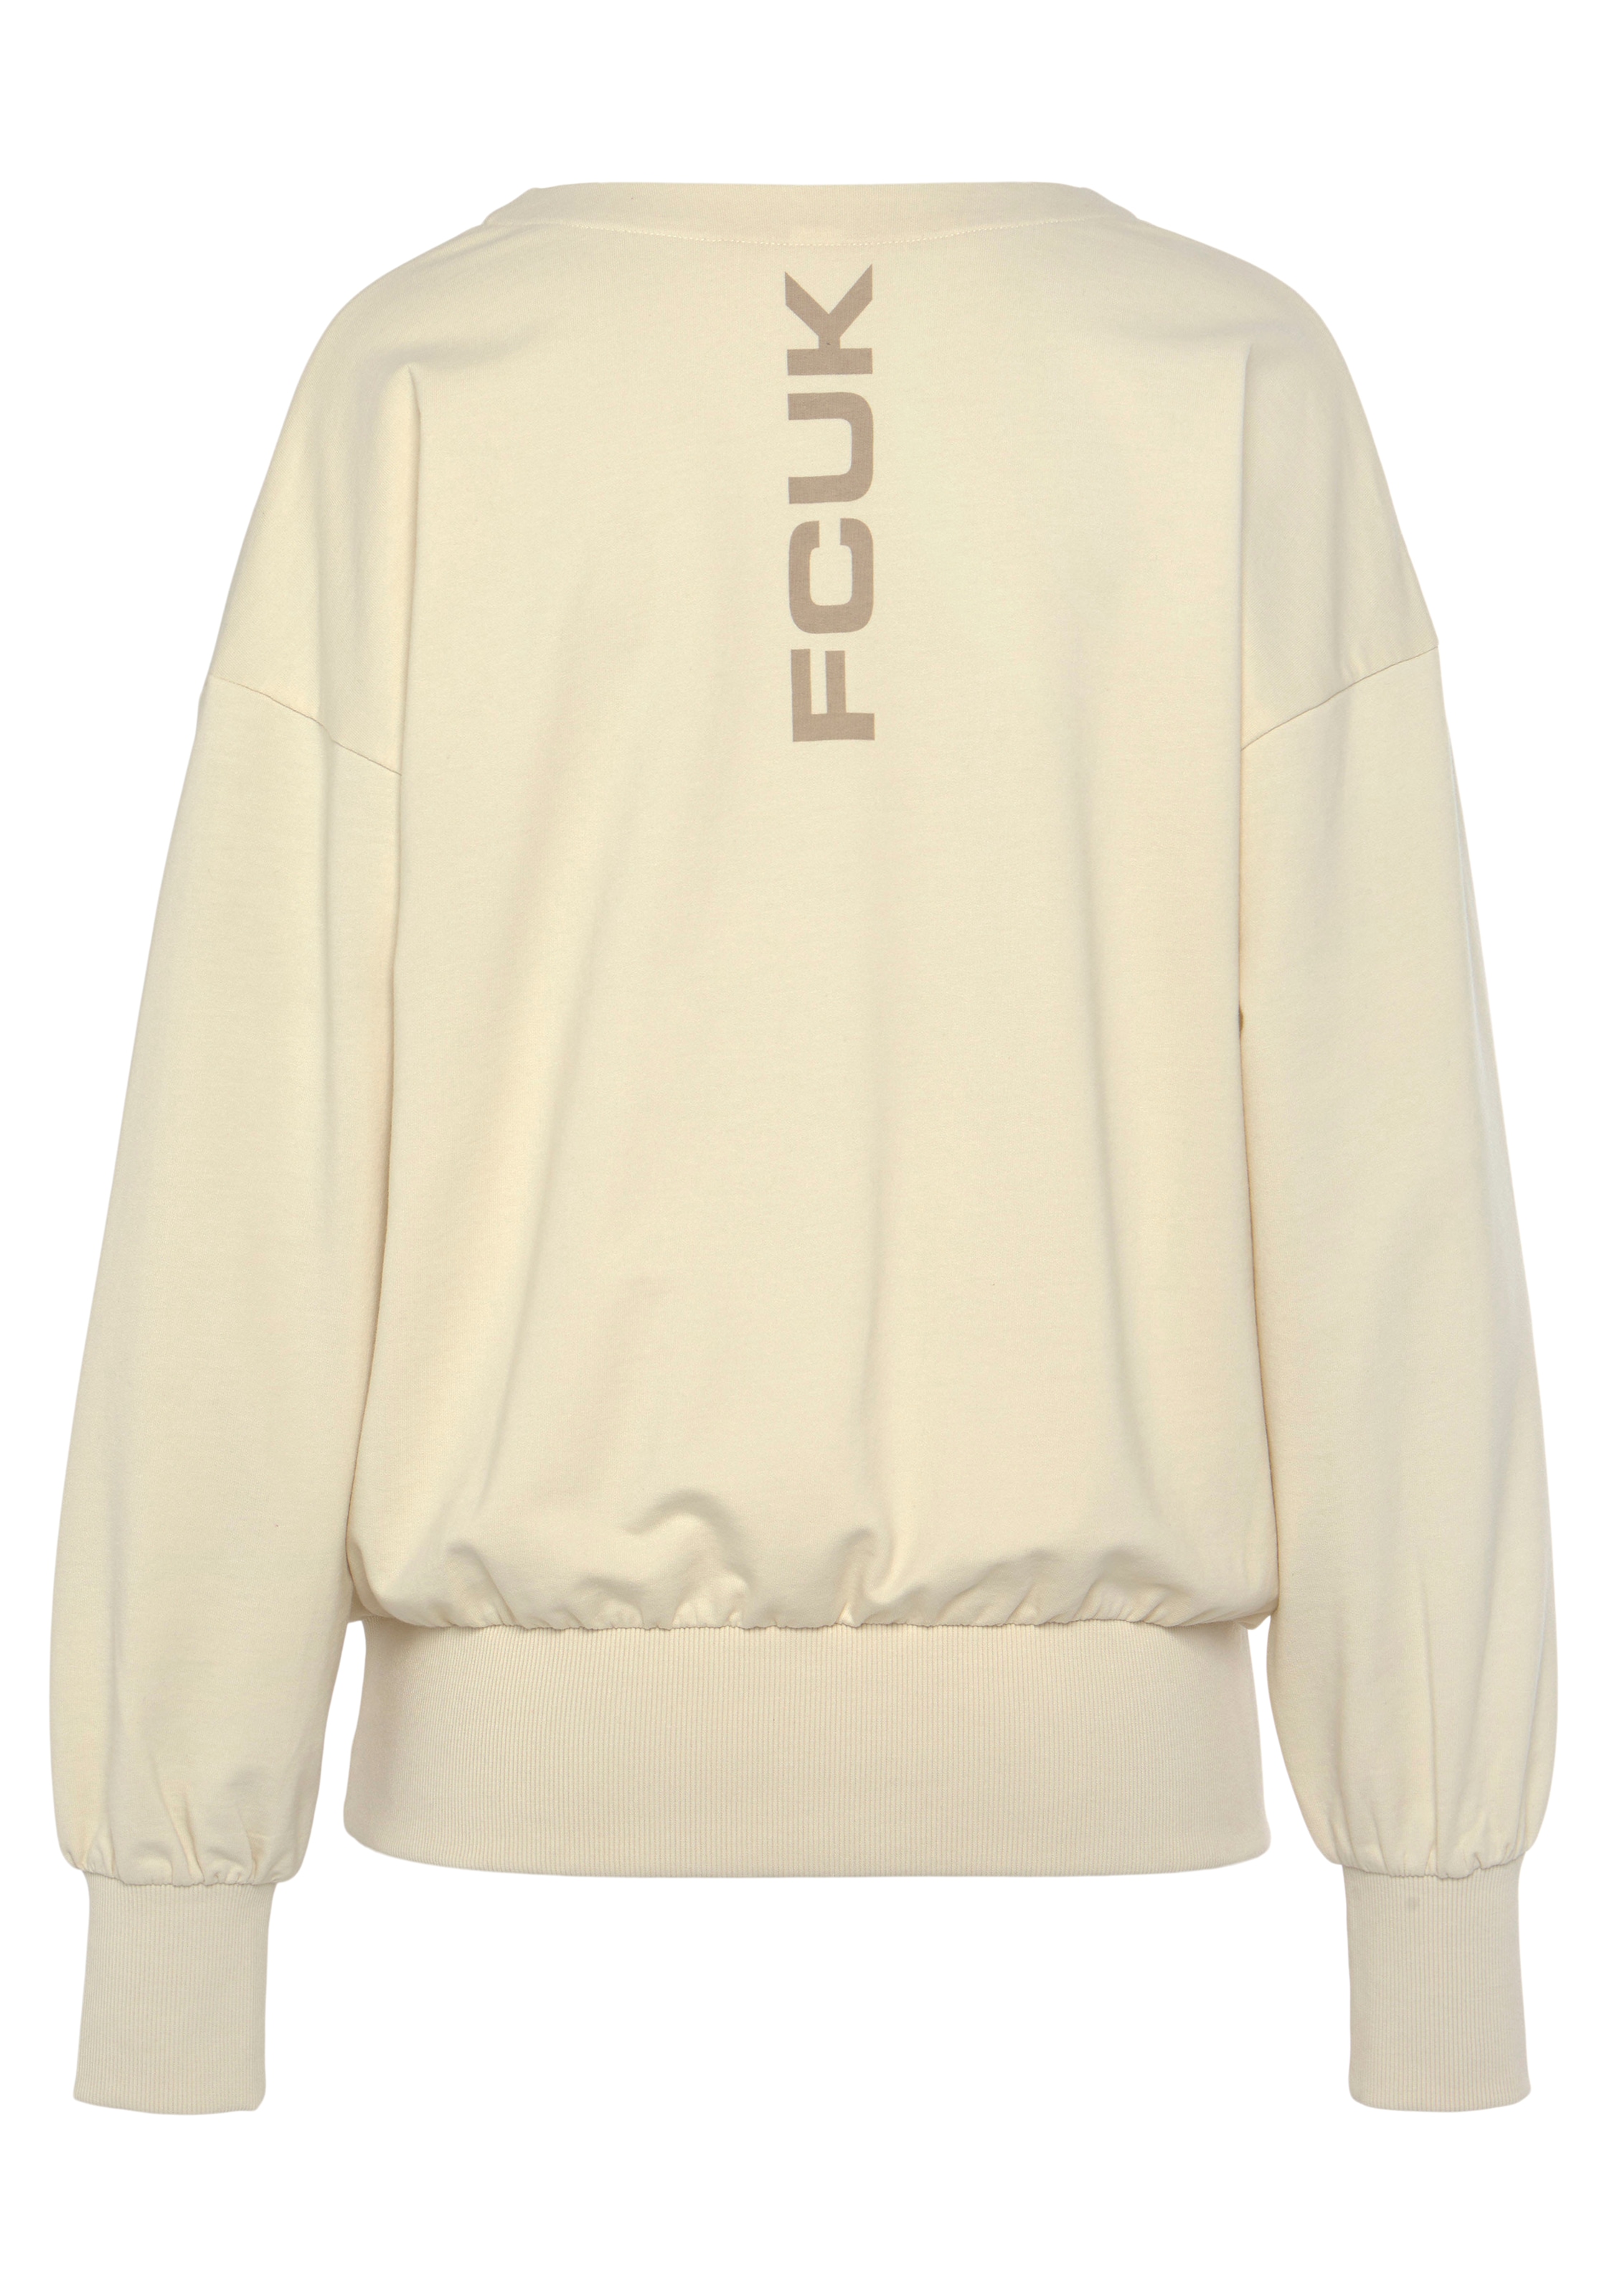 FCUK Sweatshirt, Sweatshirt mit V-Ausschnitt und großen Rückenprint, Loungeanzug